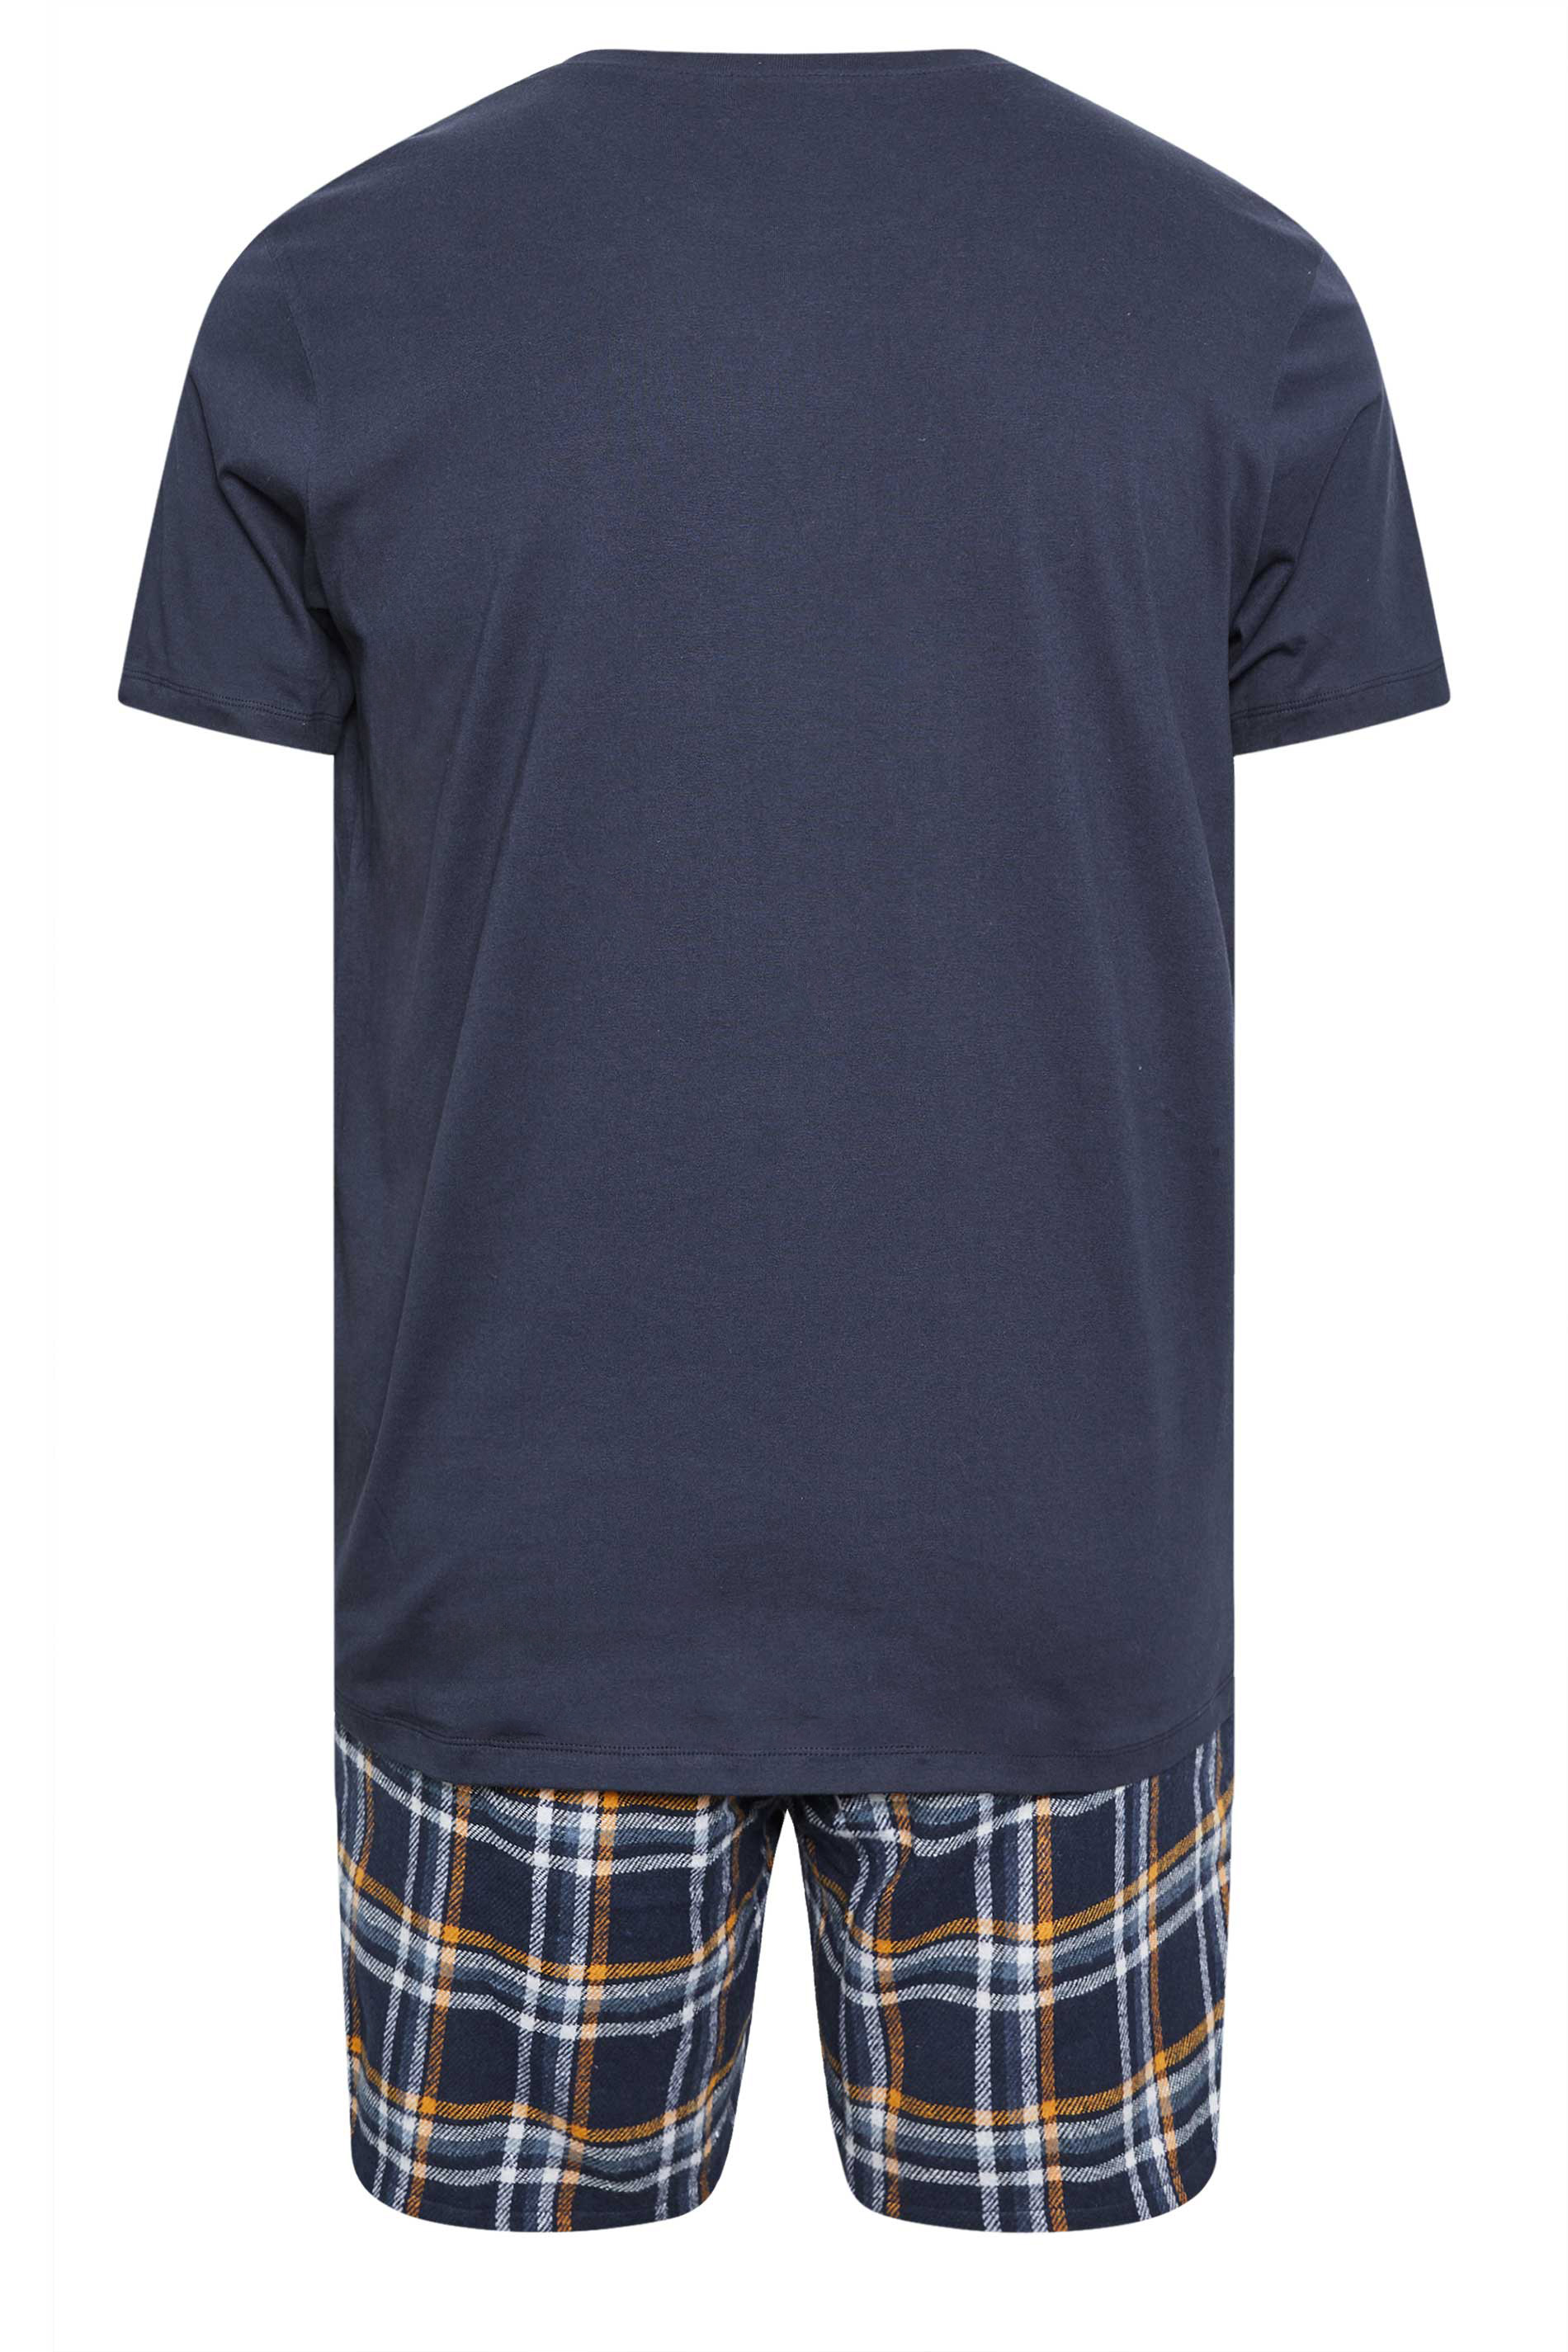 BadRhino Navy Blue Shorts and T-Shirt Pyjama Set | BadRhino 3